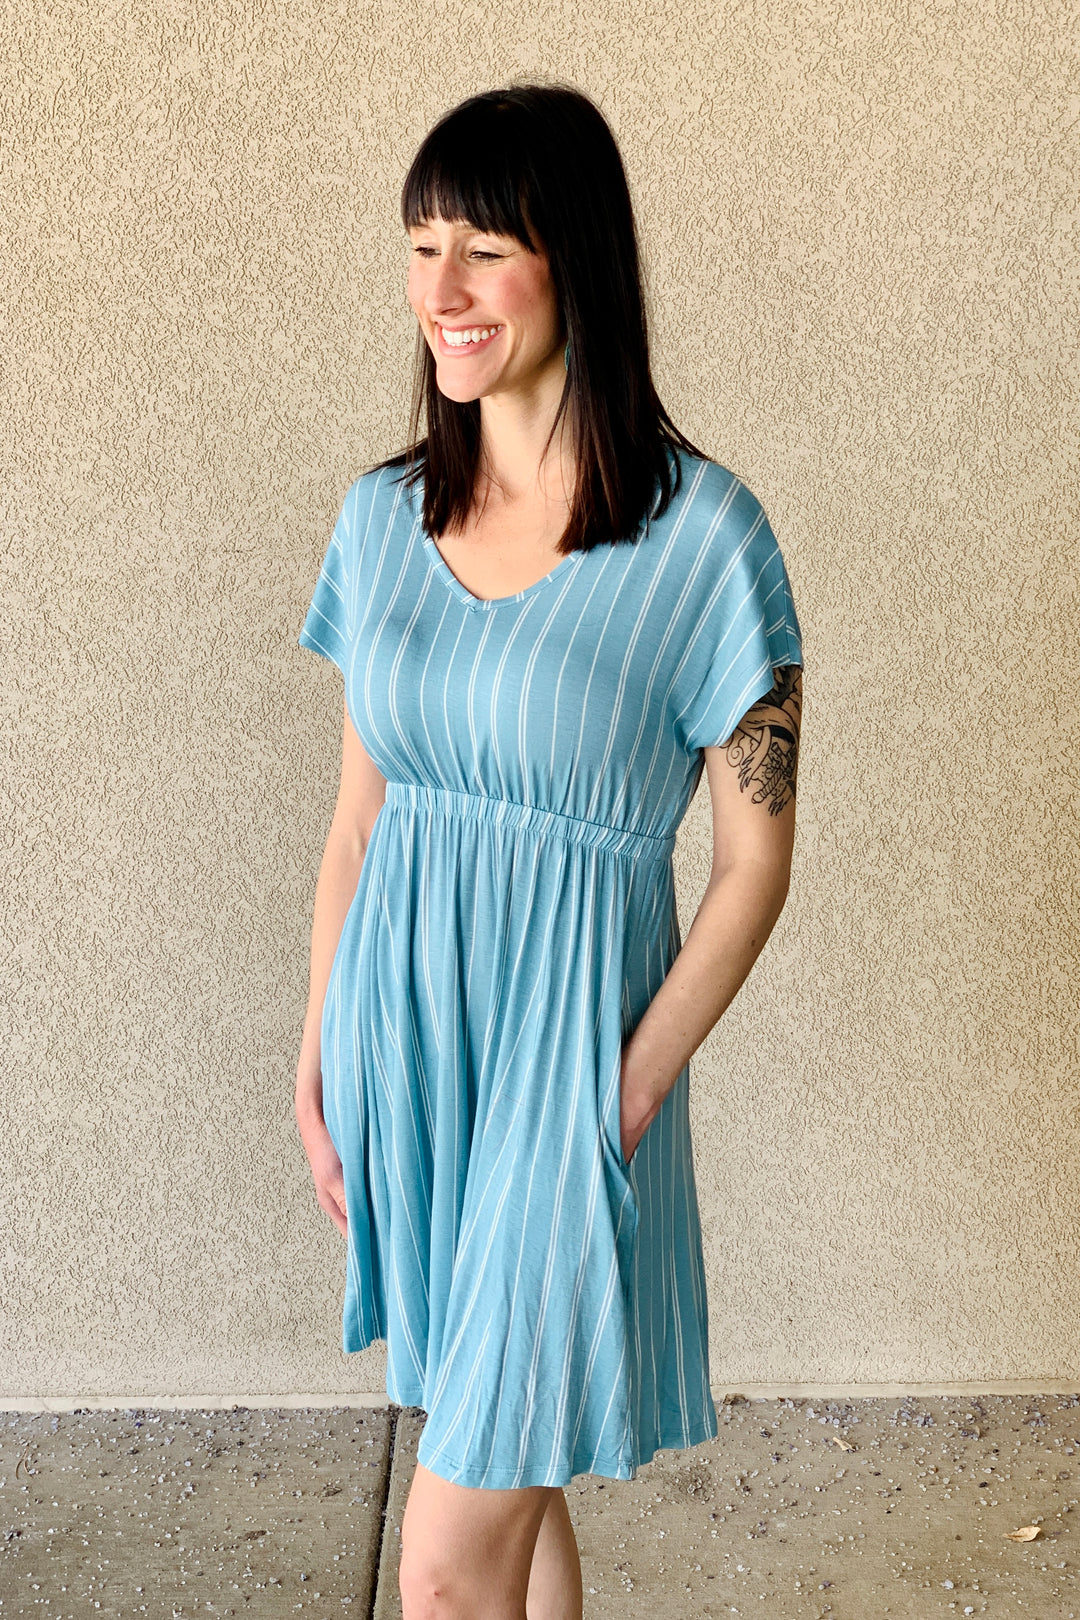 Allthreads Boardwalk Dress - Sea Blue | (Size Large)